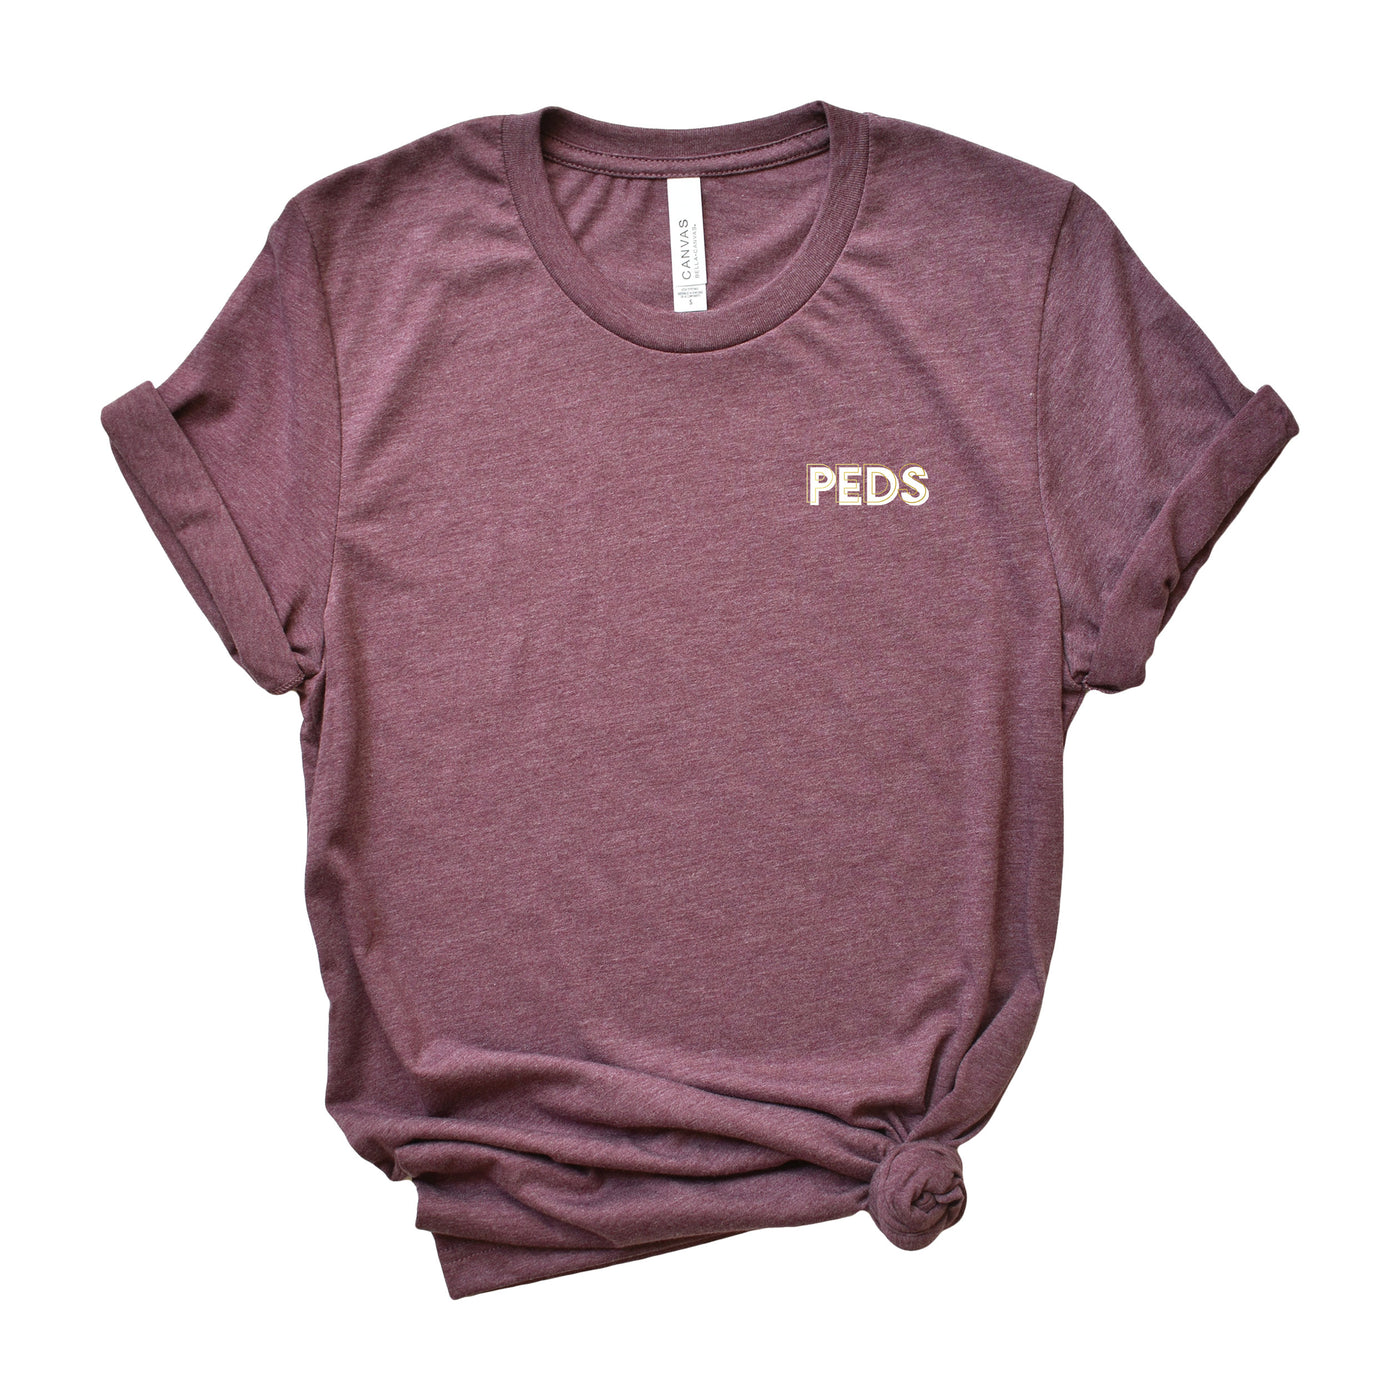 Peds Creds - Shirt